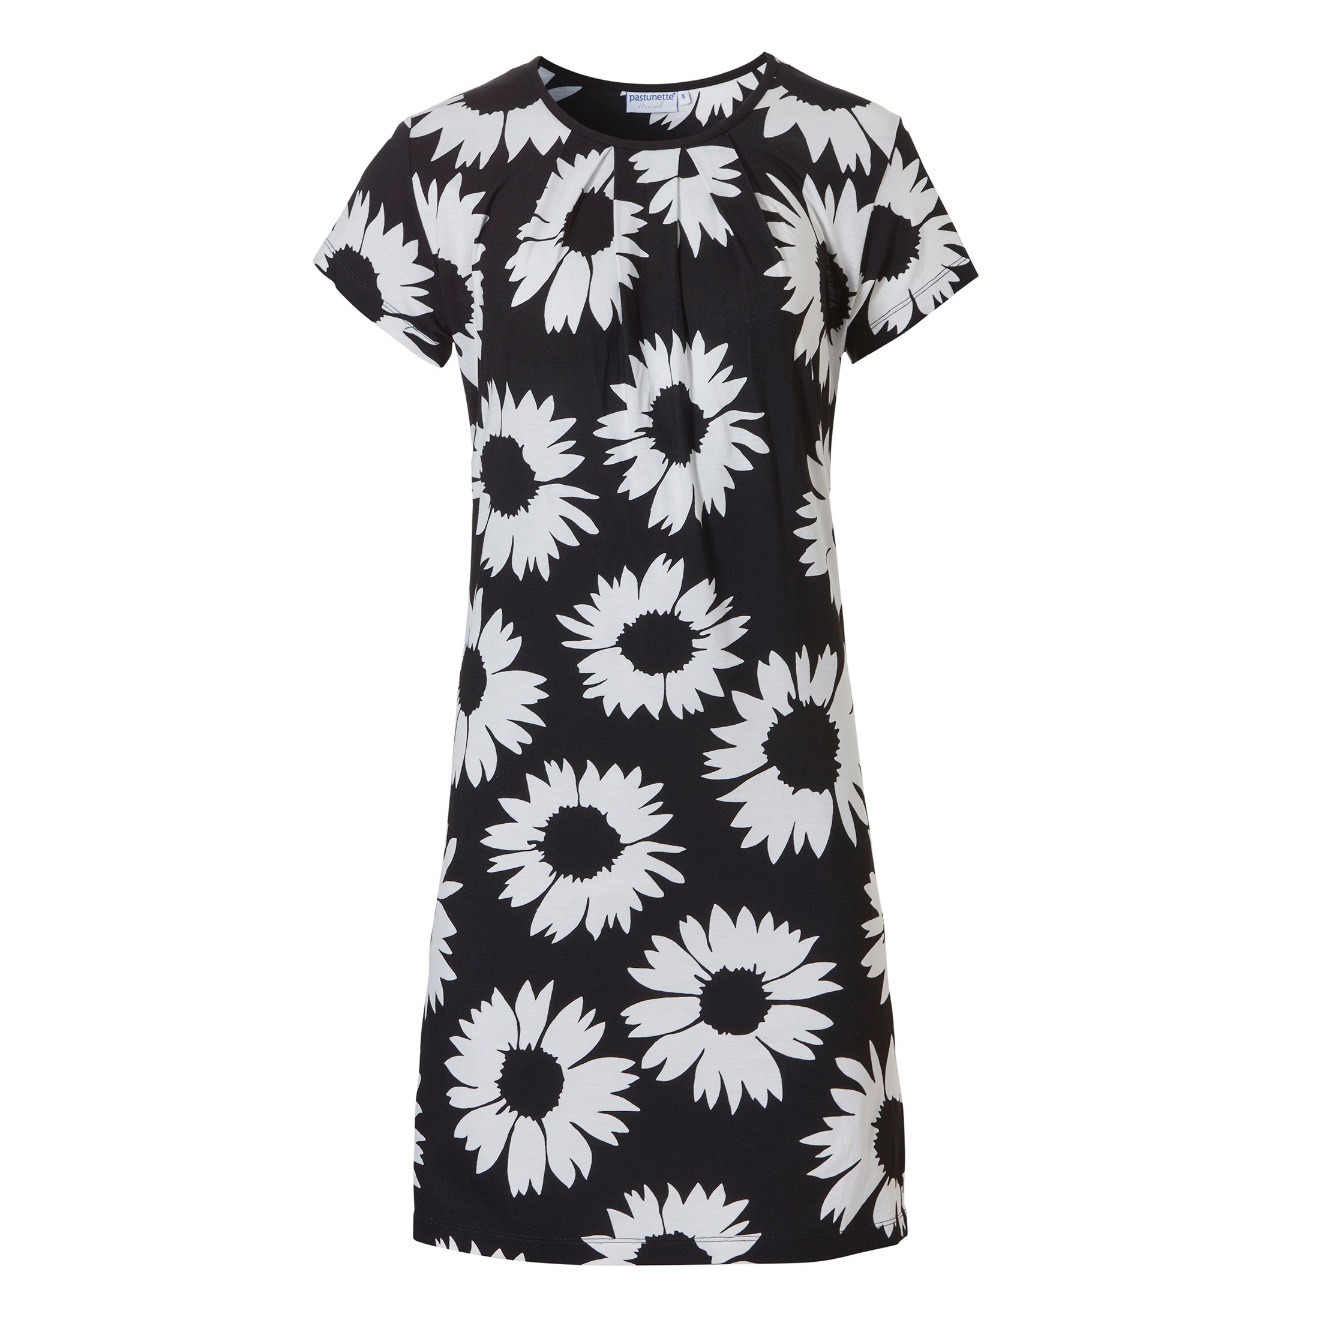 Kurzärmeliges Sommerkleid in schwarz weiß Sommerblumenmuster bei Mode Sabine Lemke